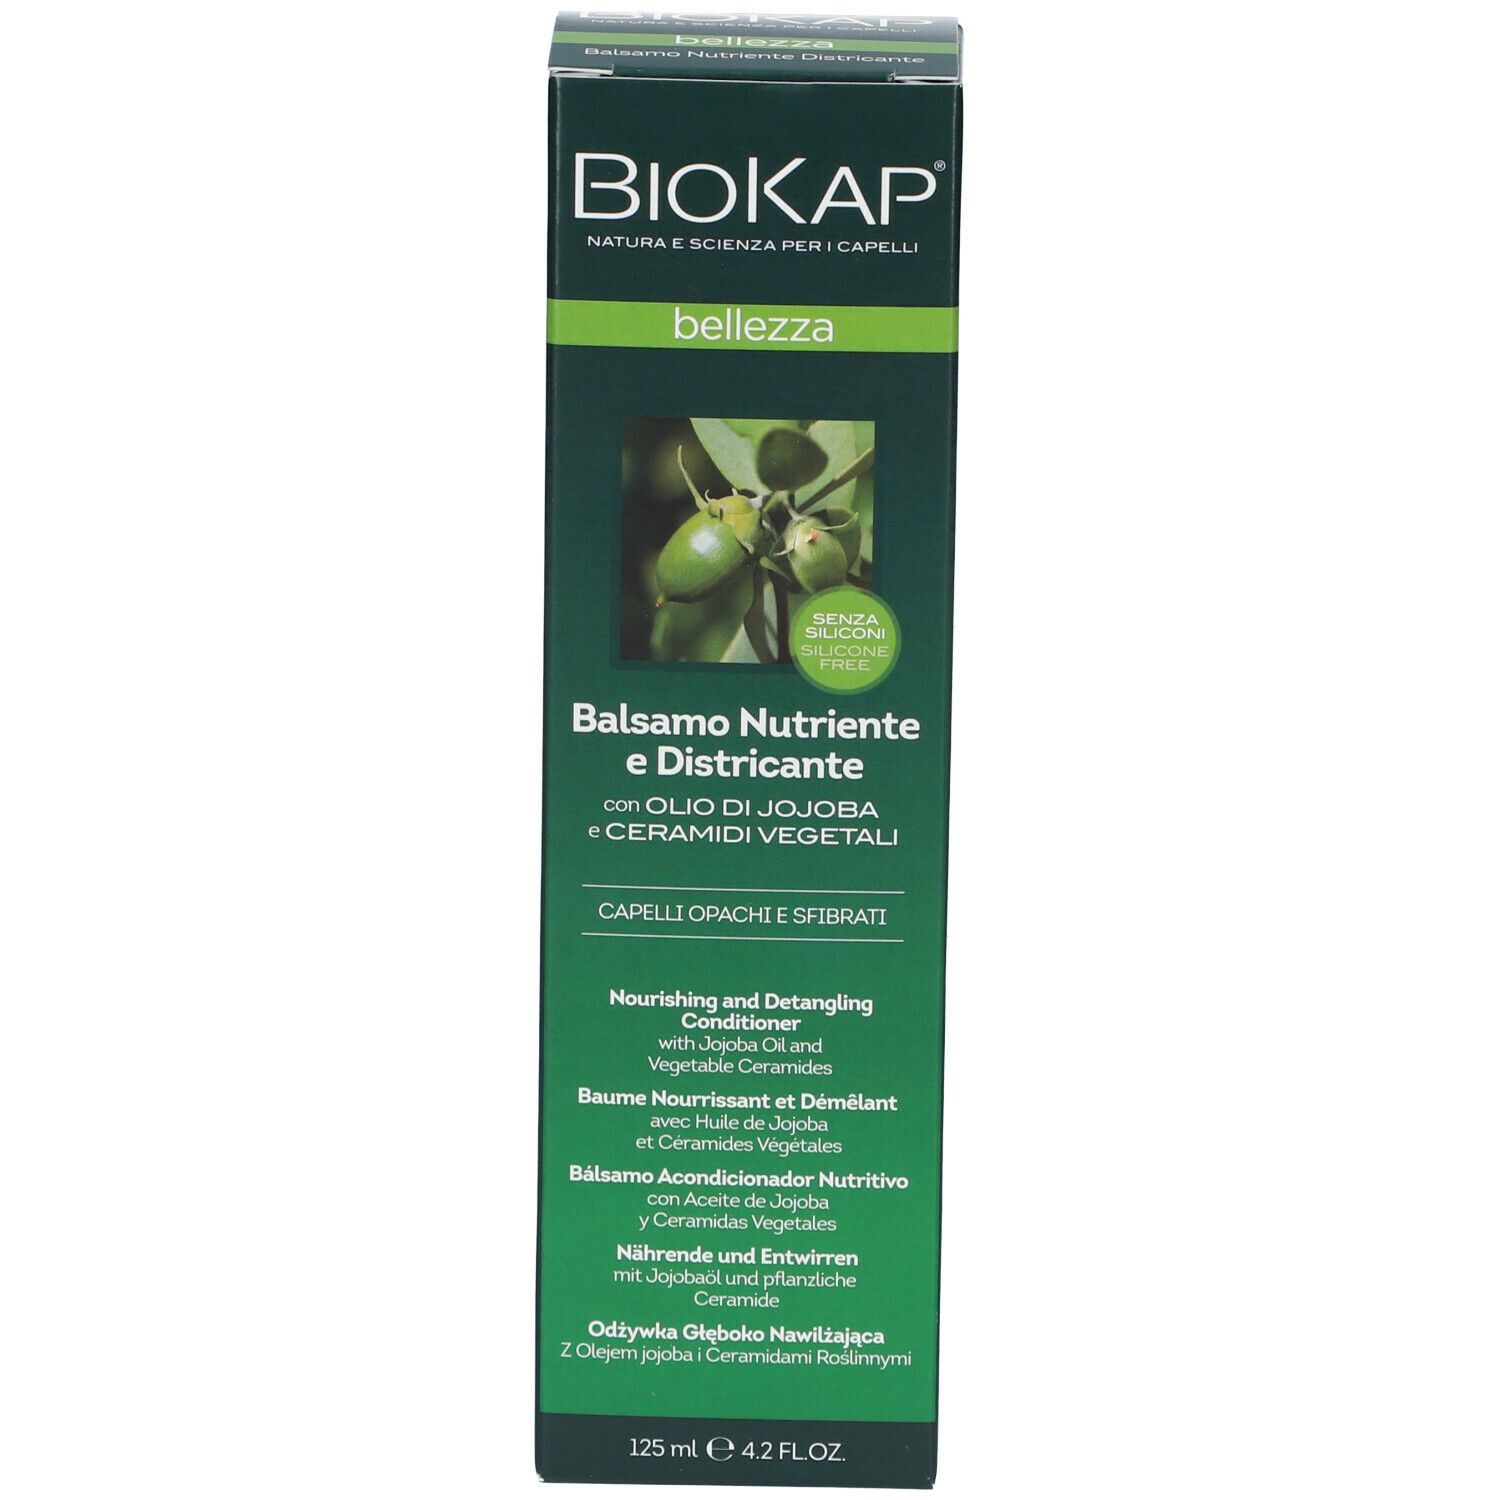 BIOS LINE BioKap Balsamo Nutriente e Districante